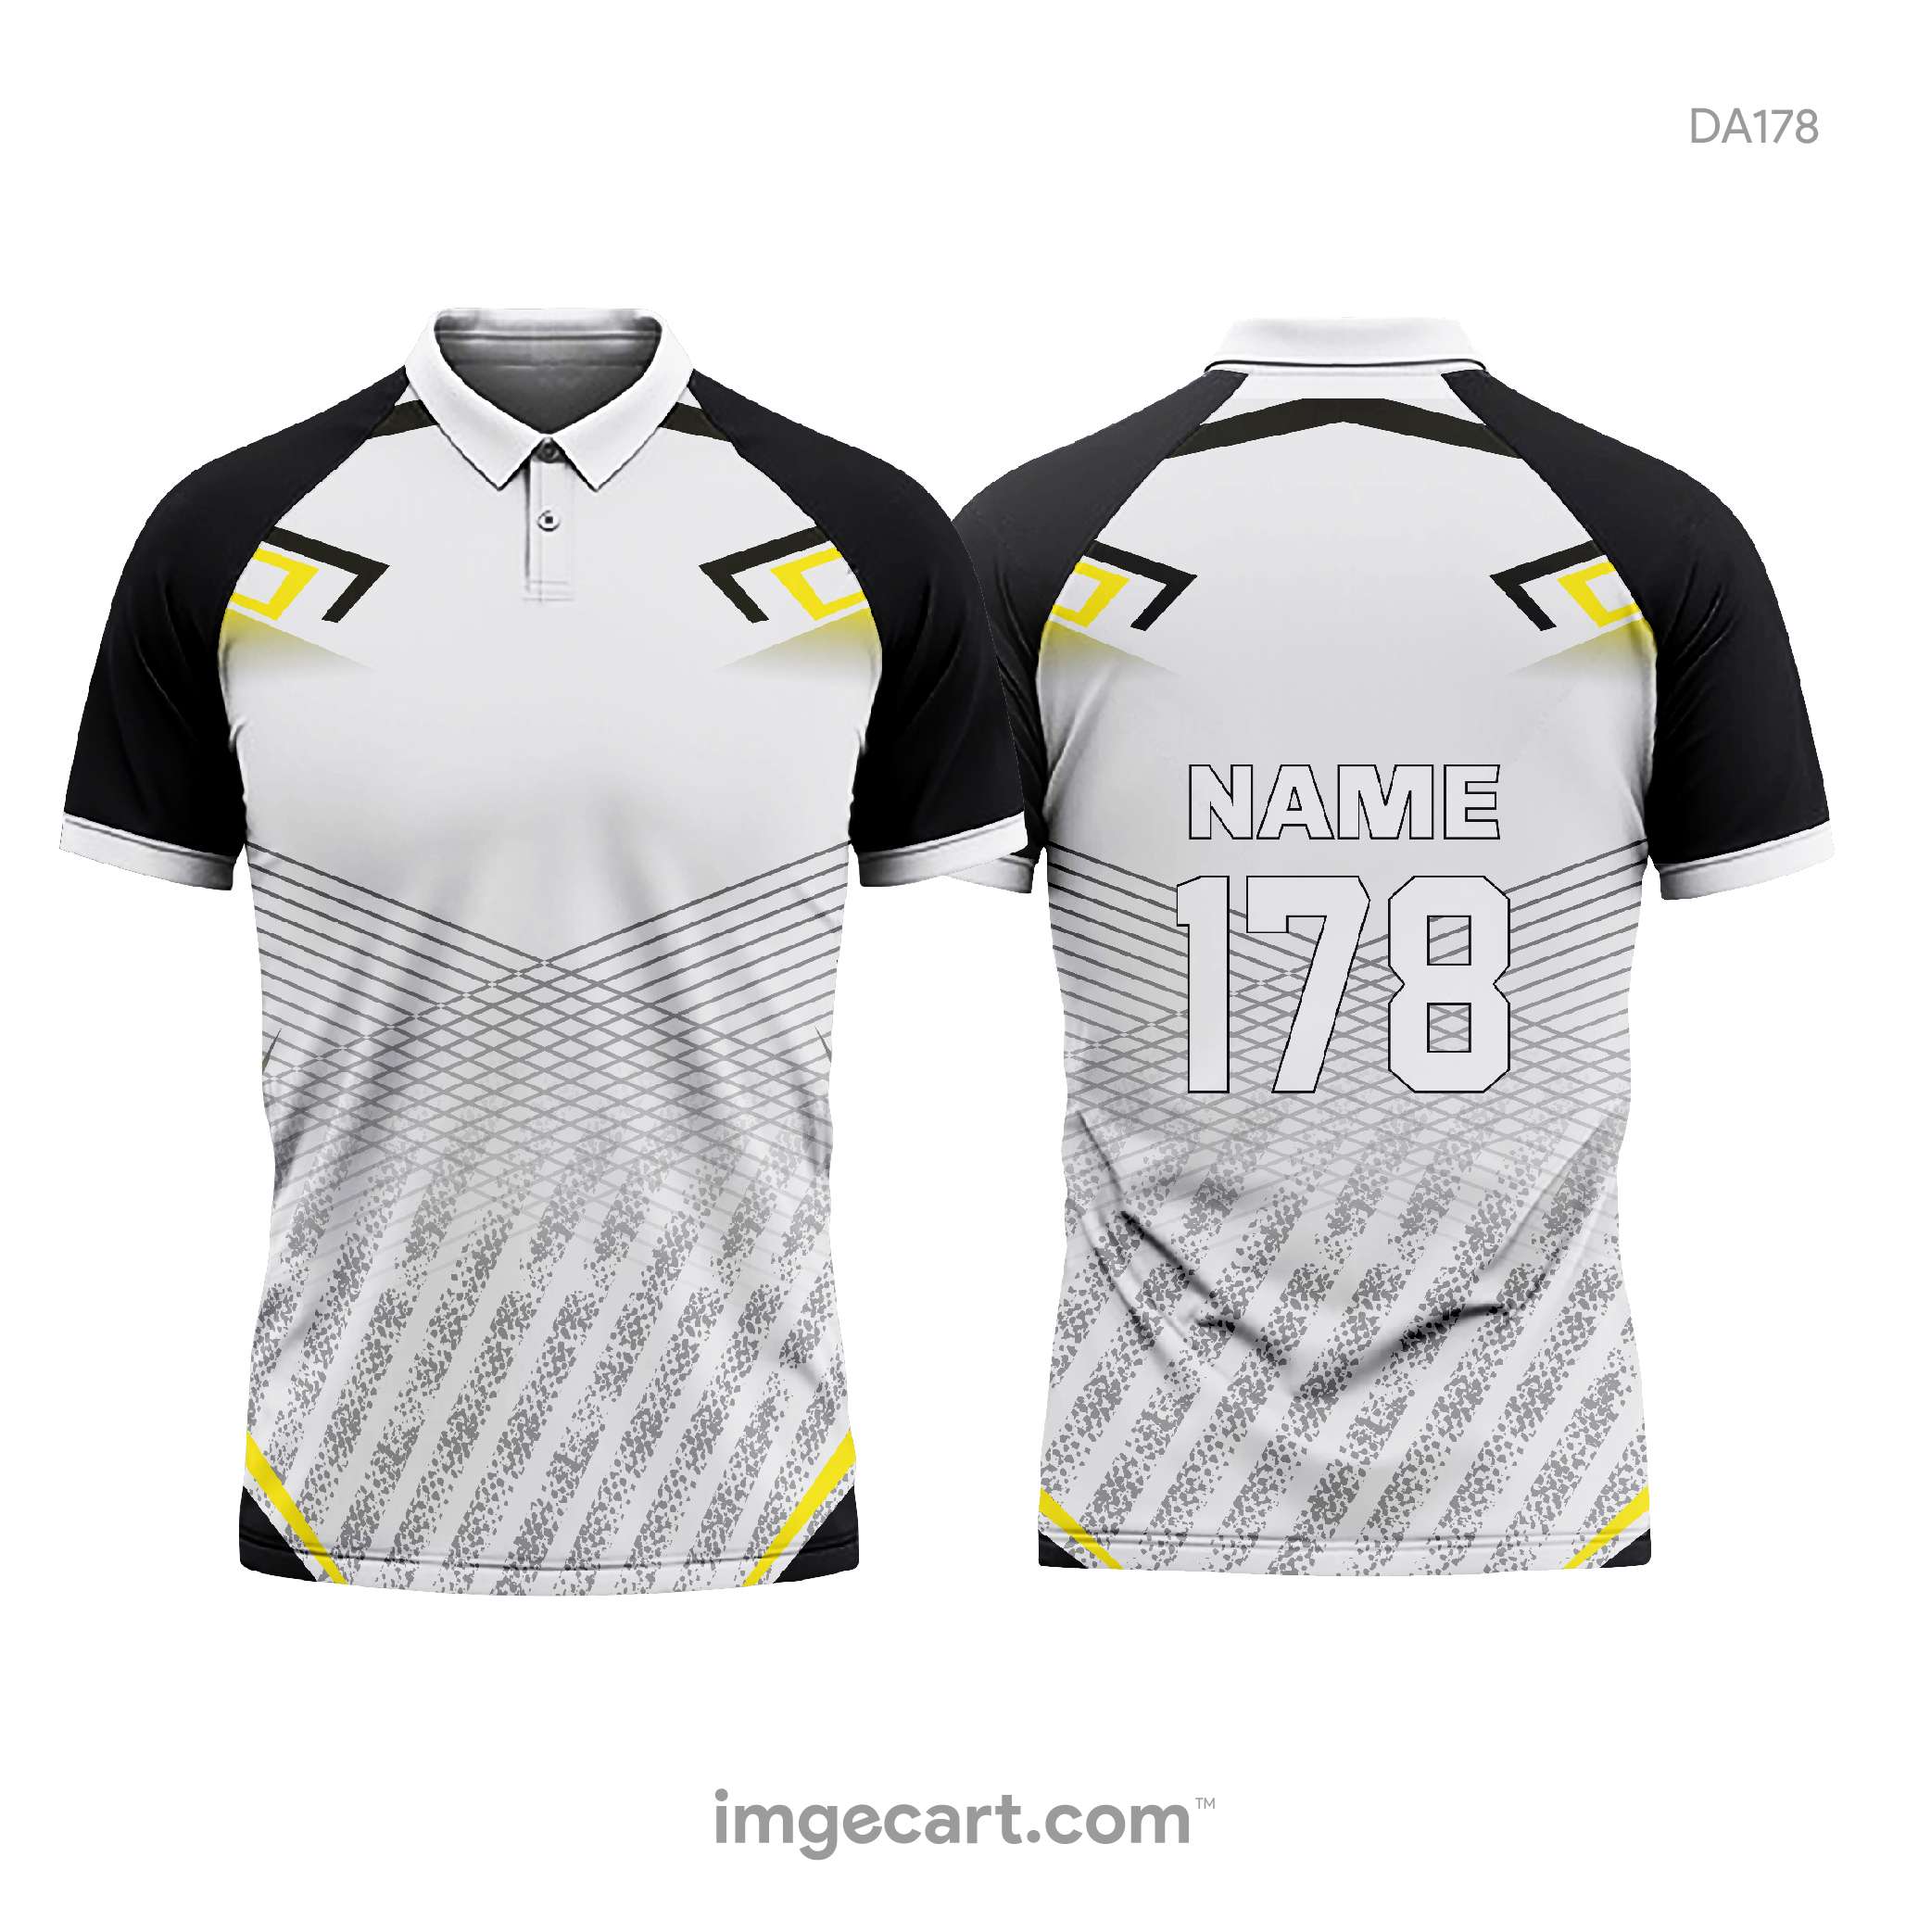 Yellow and Blue Colour Cricket Dress | Cricket dress, Cricket t shirt design,  Jersey design